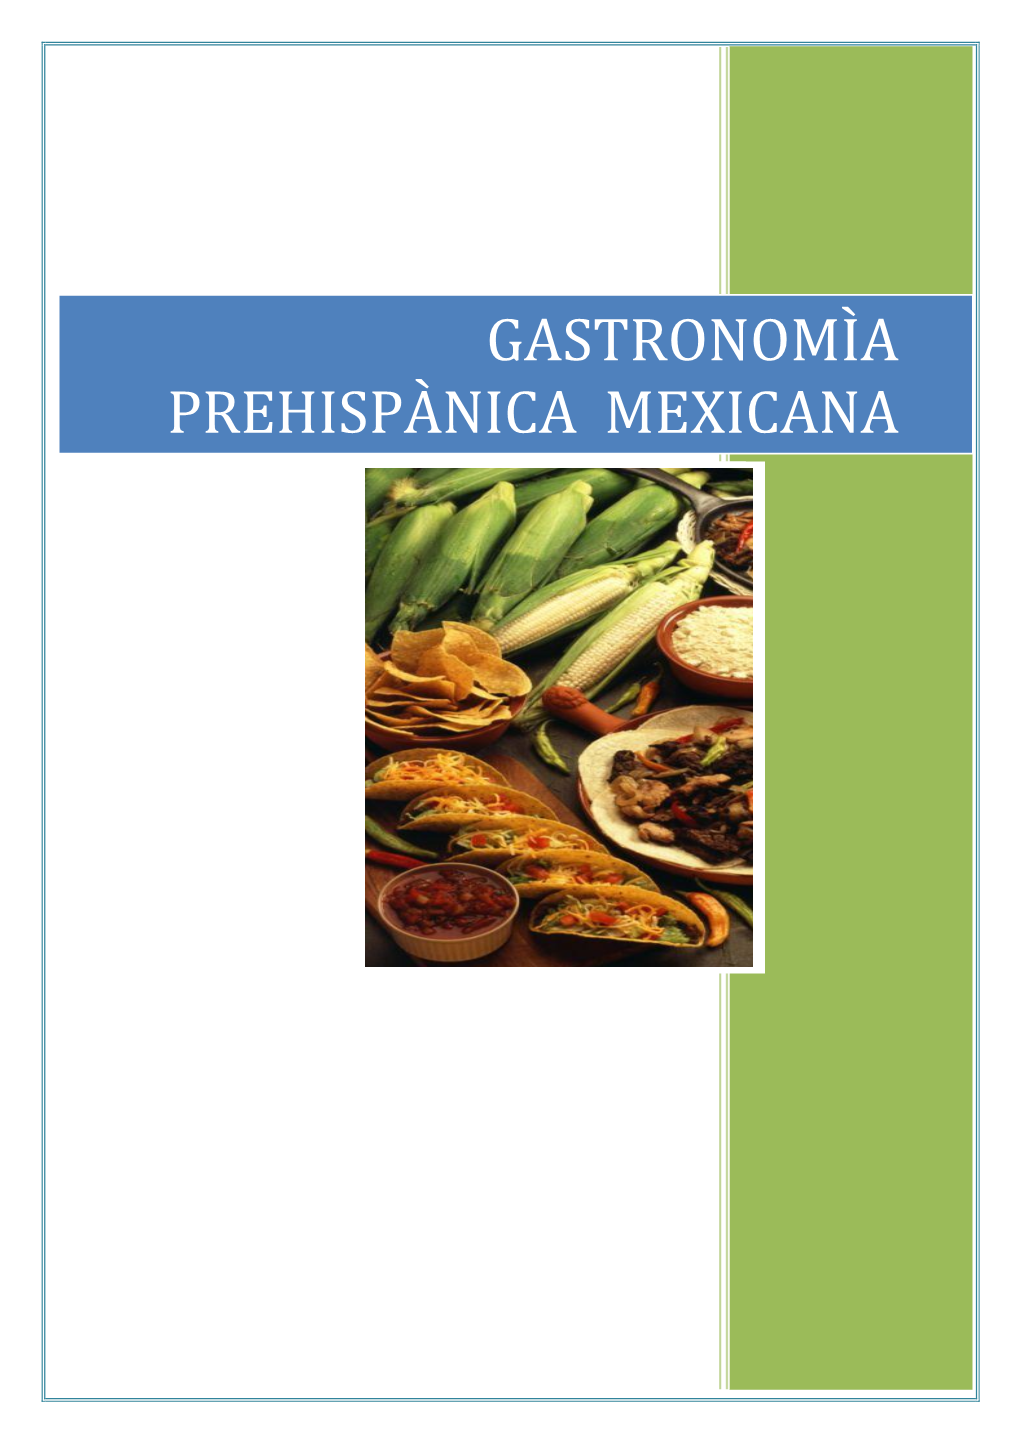 Gastronomìa Prehispànica Mexicana